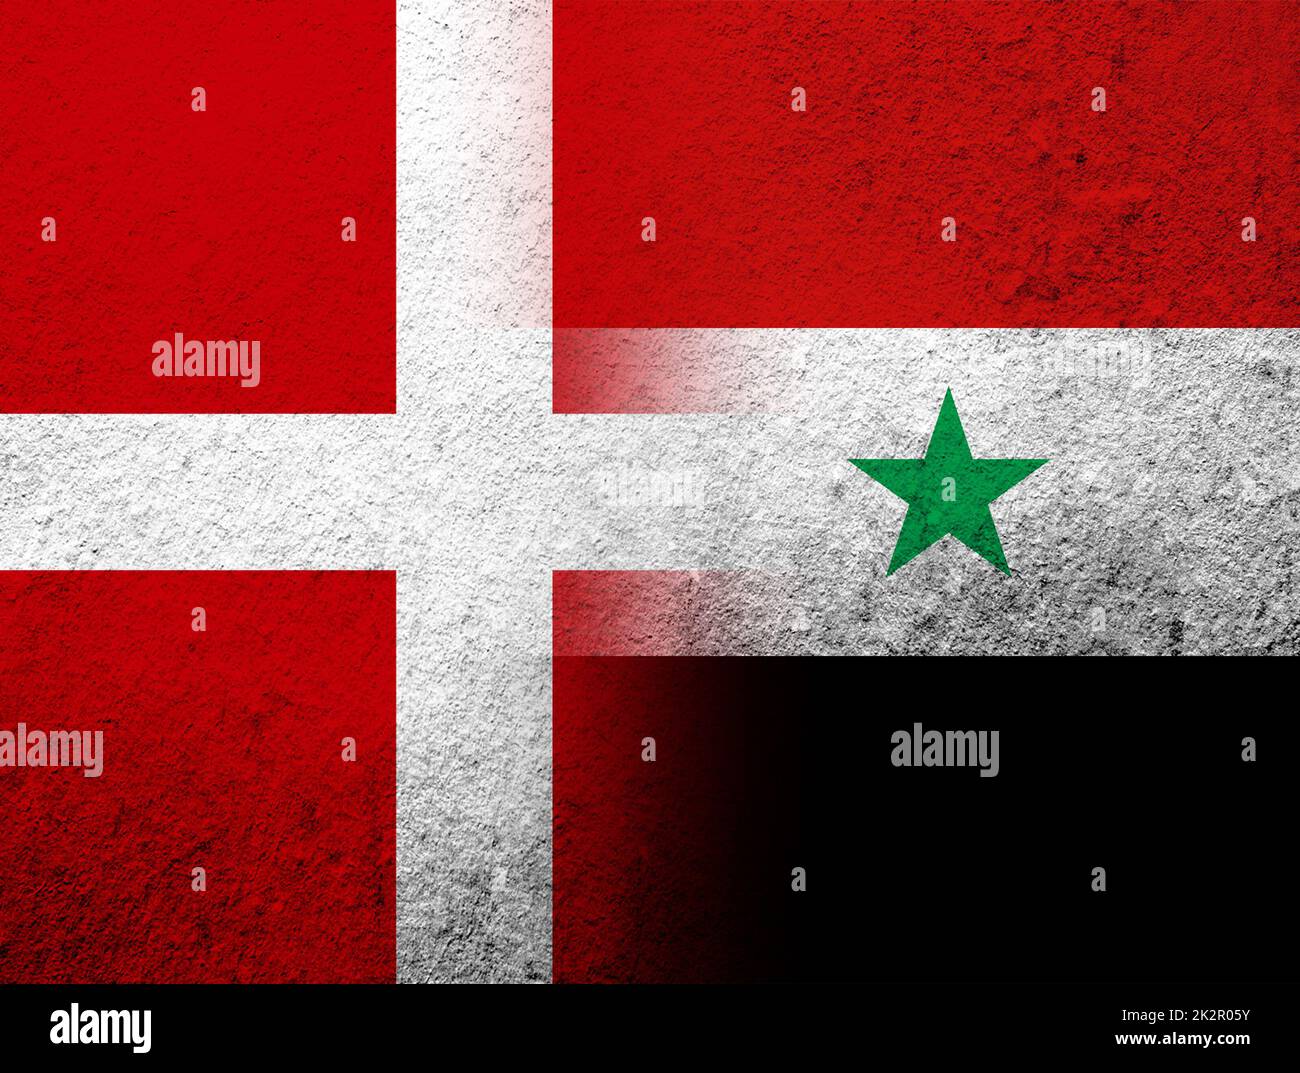 Das Königreich Dänemark Nationalflagge mit der syrischen arabischen Republik Nationalflagge. Grunge Hintergrund Stockfoto